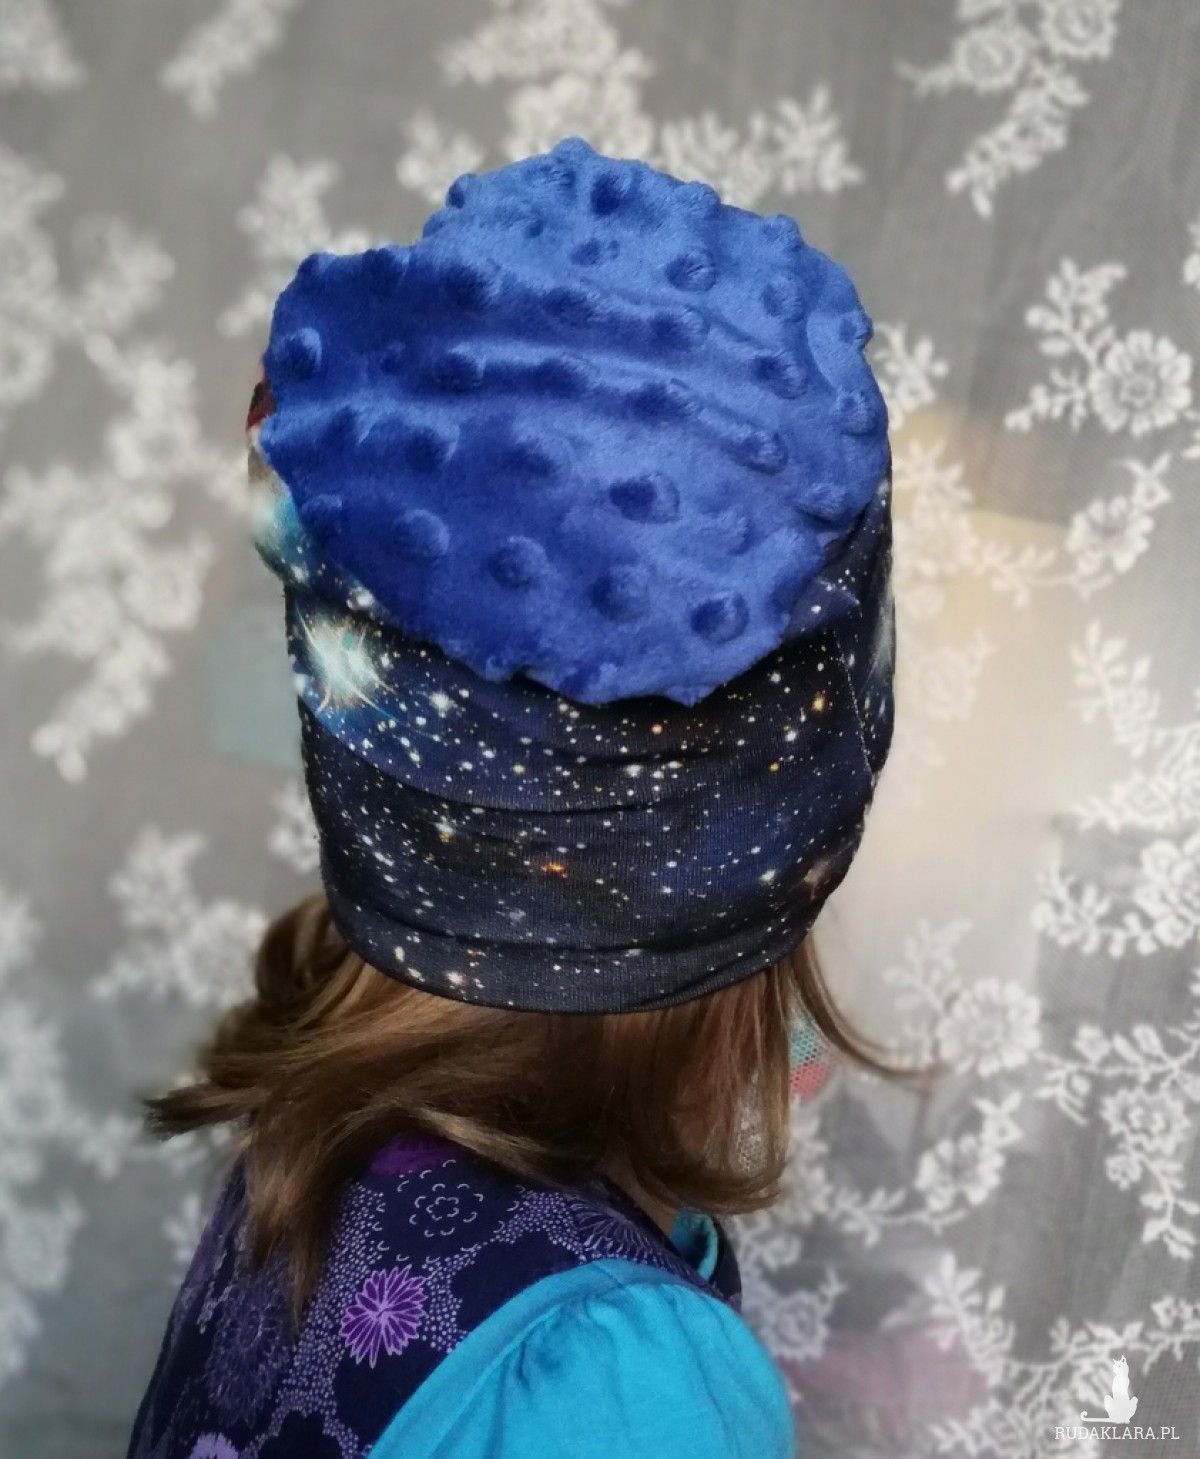 czapka kosmiczna unisex wiosenna dla dziecka na 1-2 lata-box 33- czapka kosmiczna unisex wiosenna dla dziecka handmade